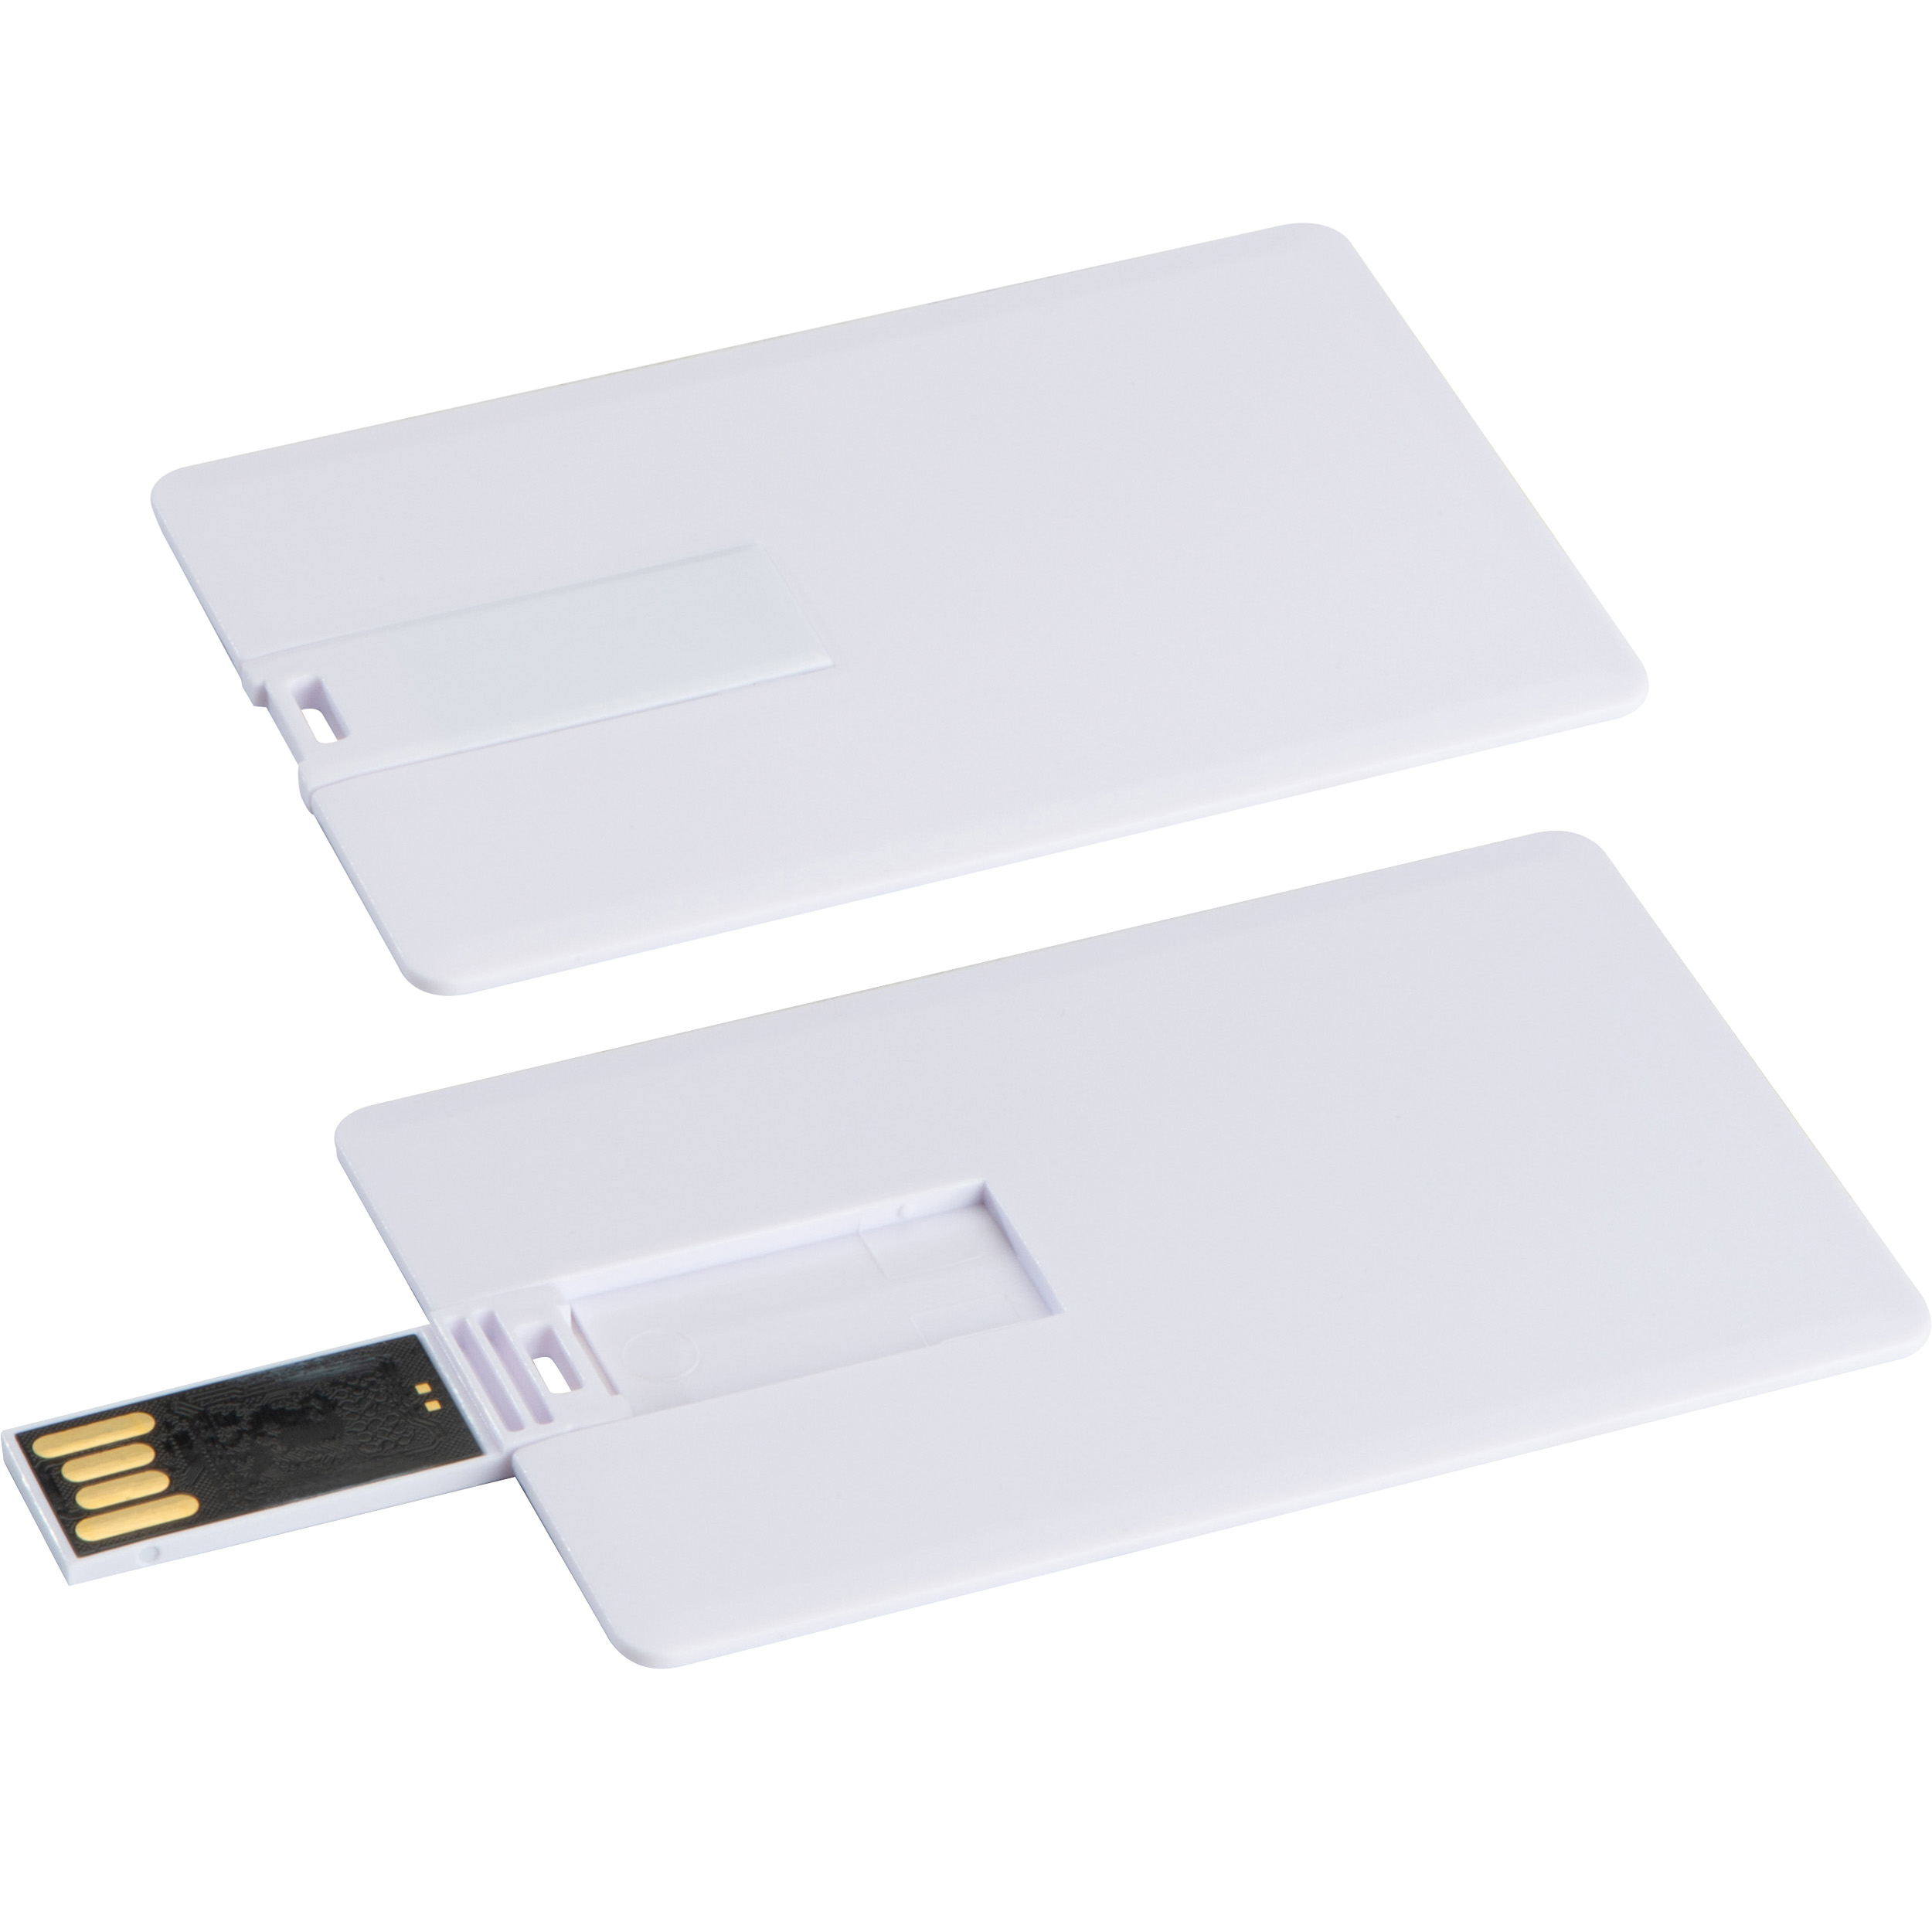 Scheda USB FlatStow - Campodimele